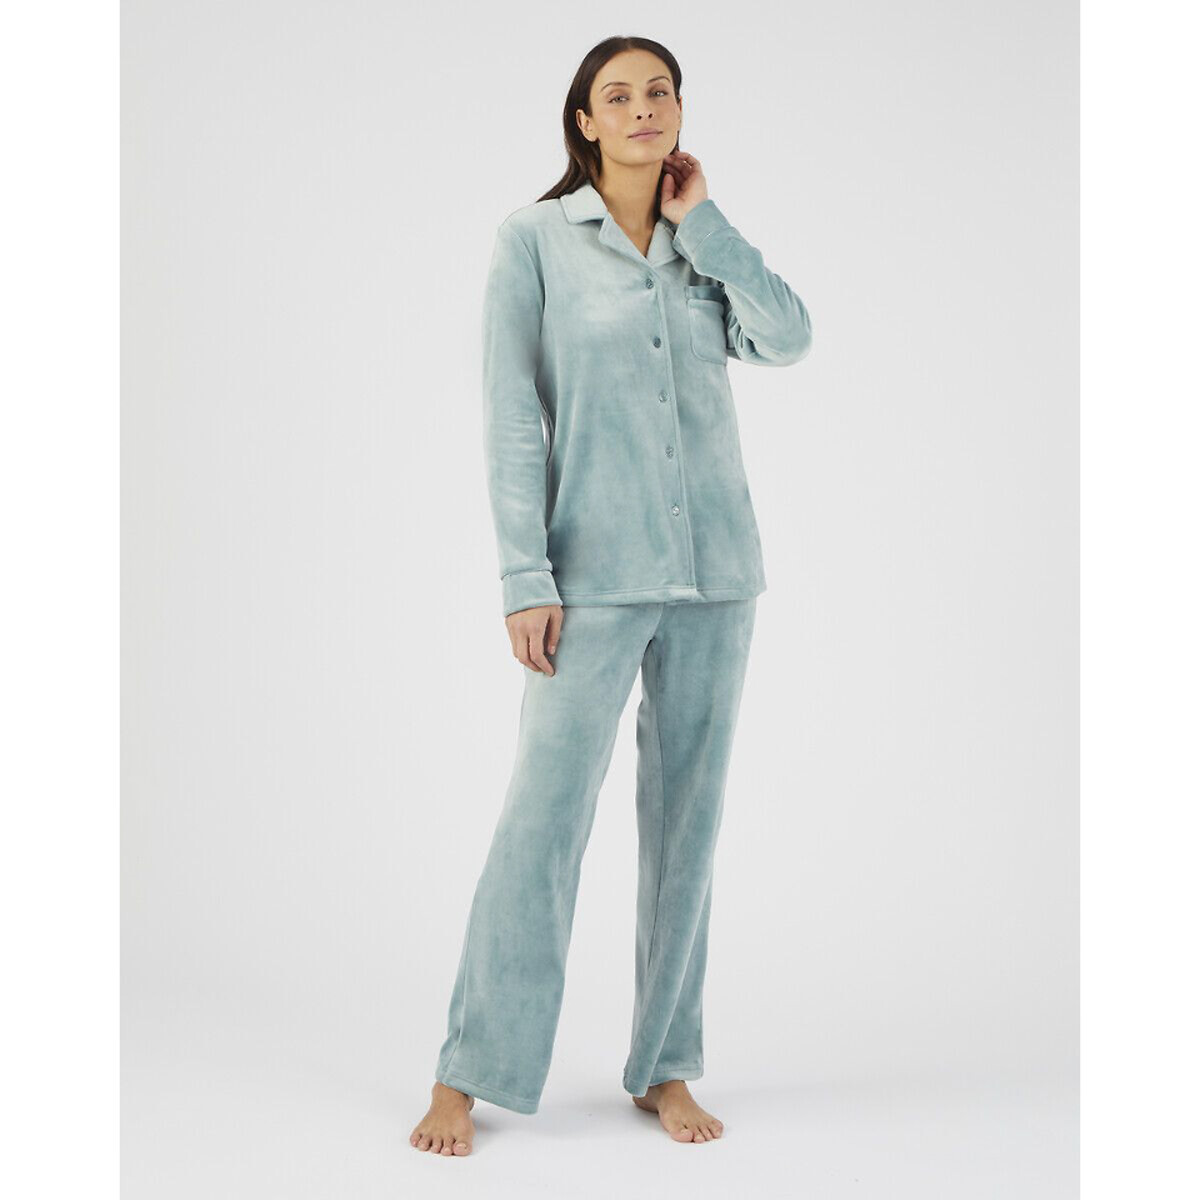 Комплект пижамный из термолактила La Redoute XS синий комплект пижамный из термолактила la redoute xs синий